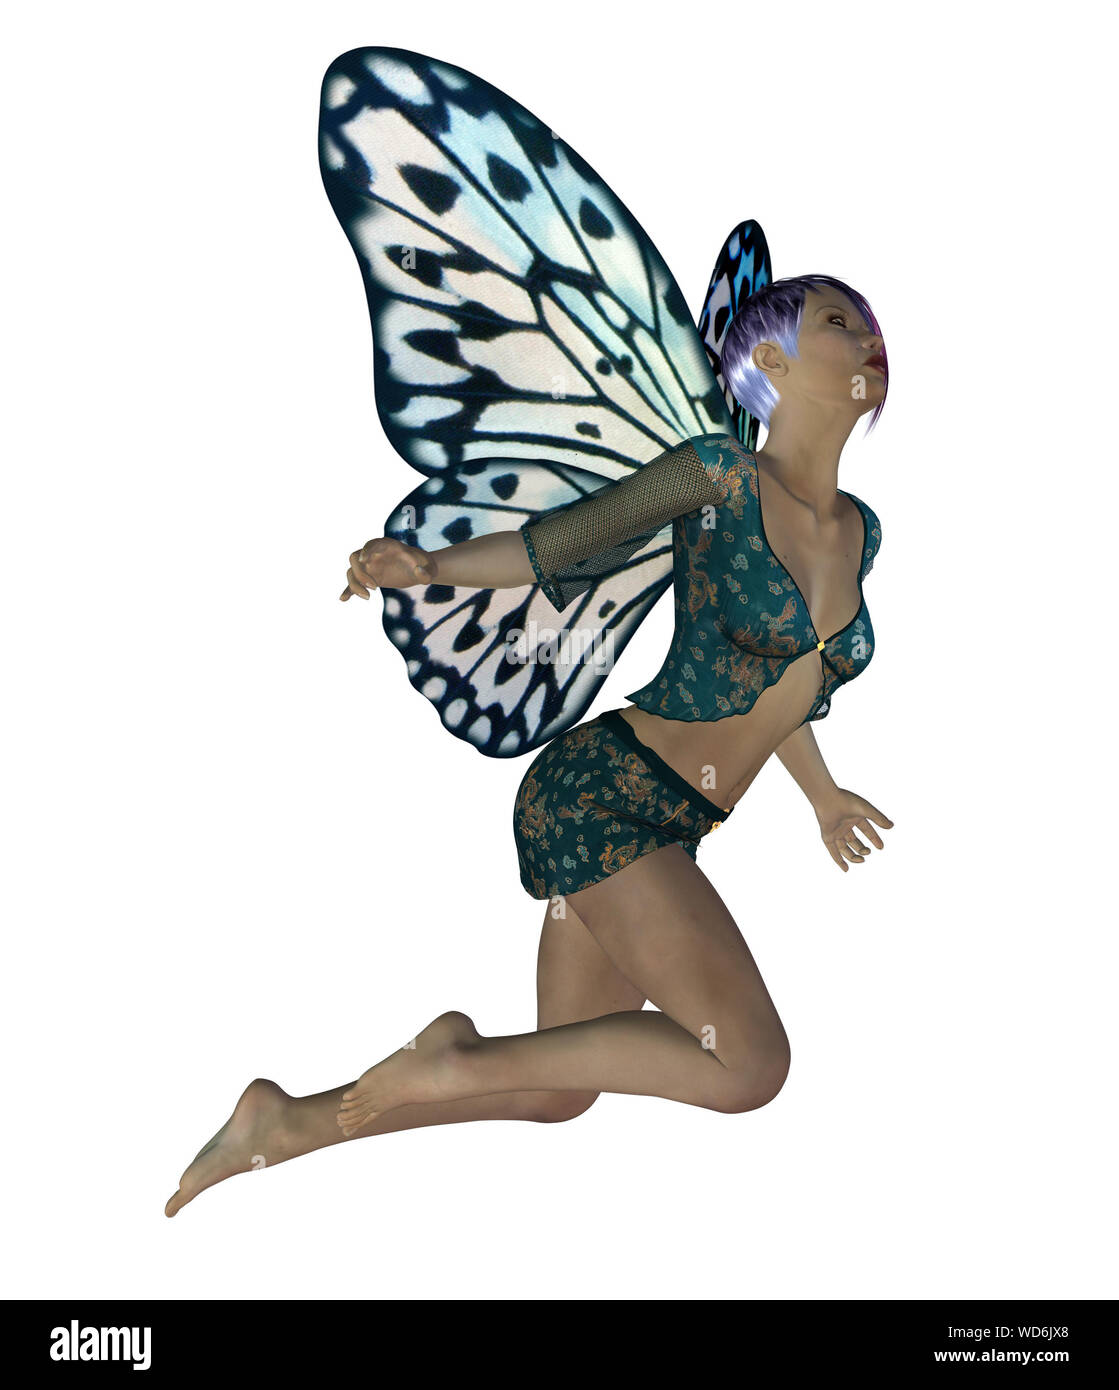 Imagen renderizada digitalmente de un hada con alas de mariposa azul  Fotografía de stock - Alamy